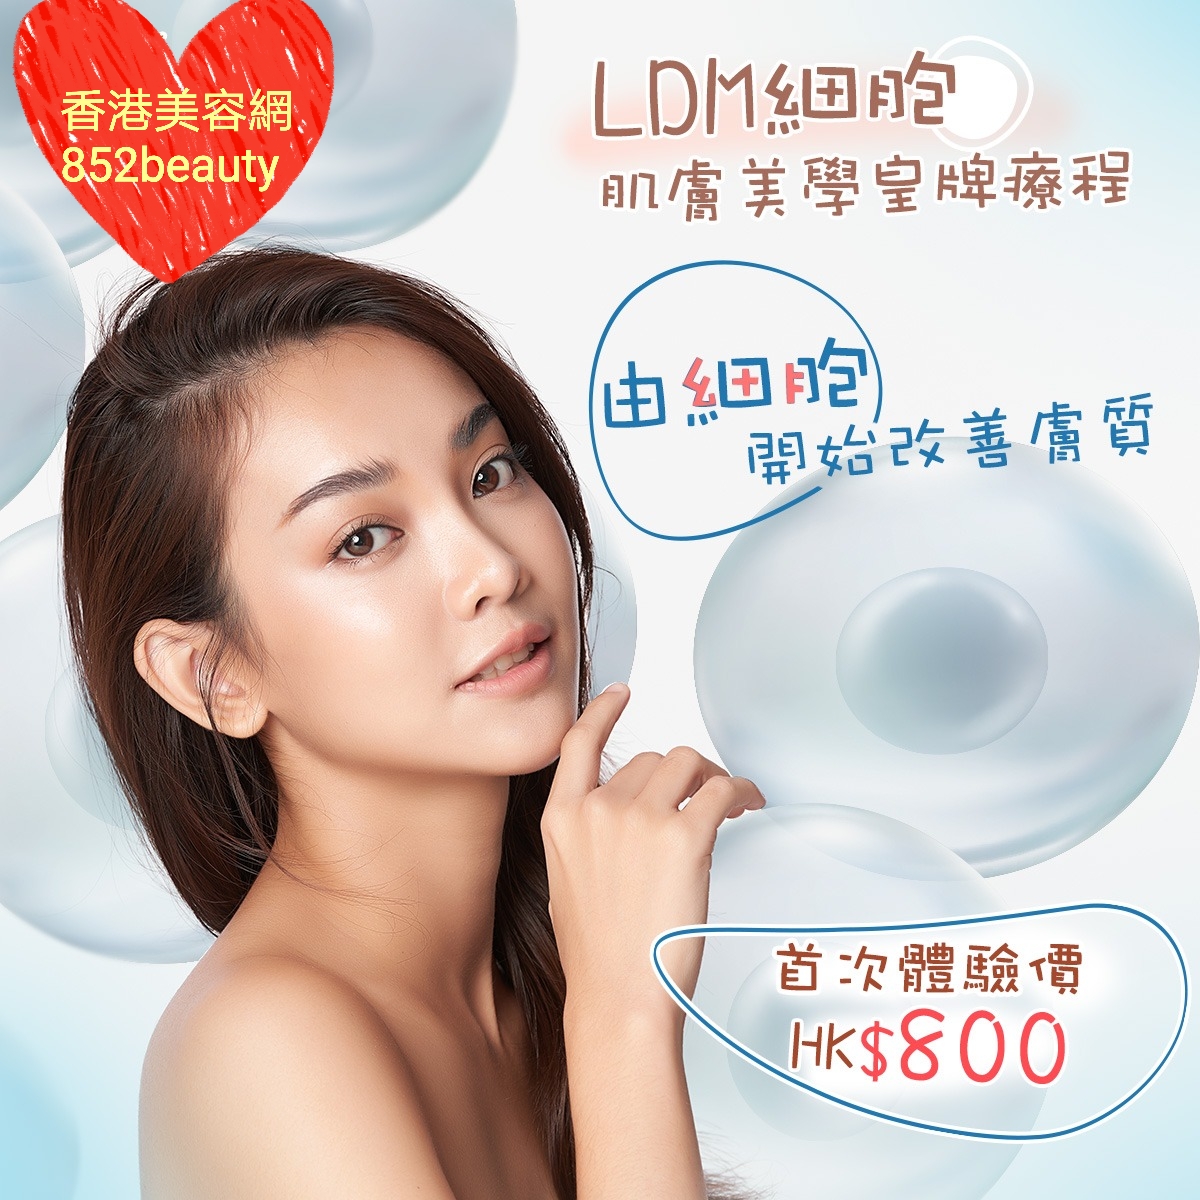 最新美容優惠美容優惠 - 全港區] LDM細胞肌膚美學療程✨首次體驗價: HK$800 @ 香港美容網 Hong Kong Beauty Salon